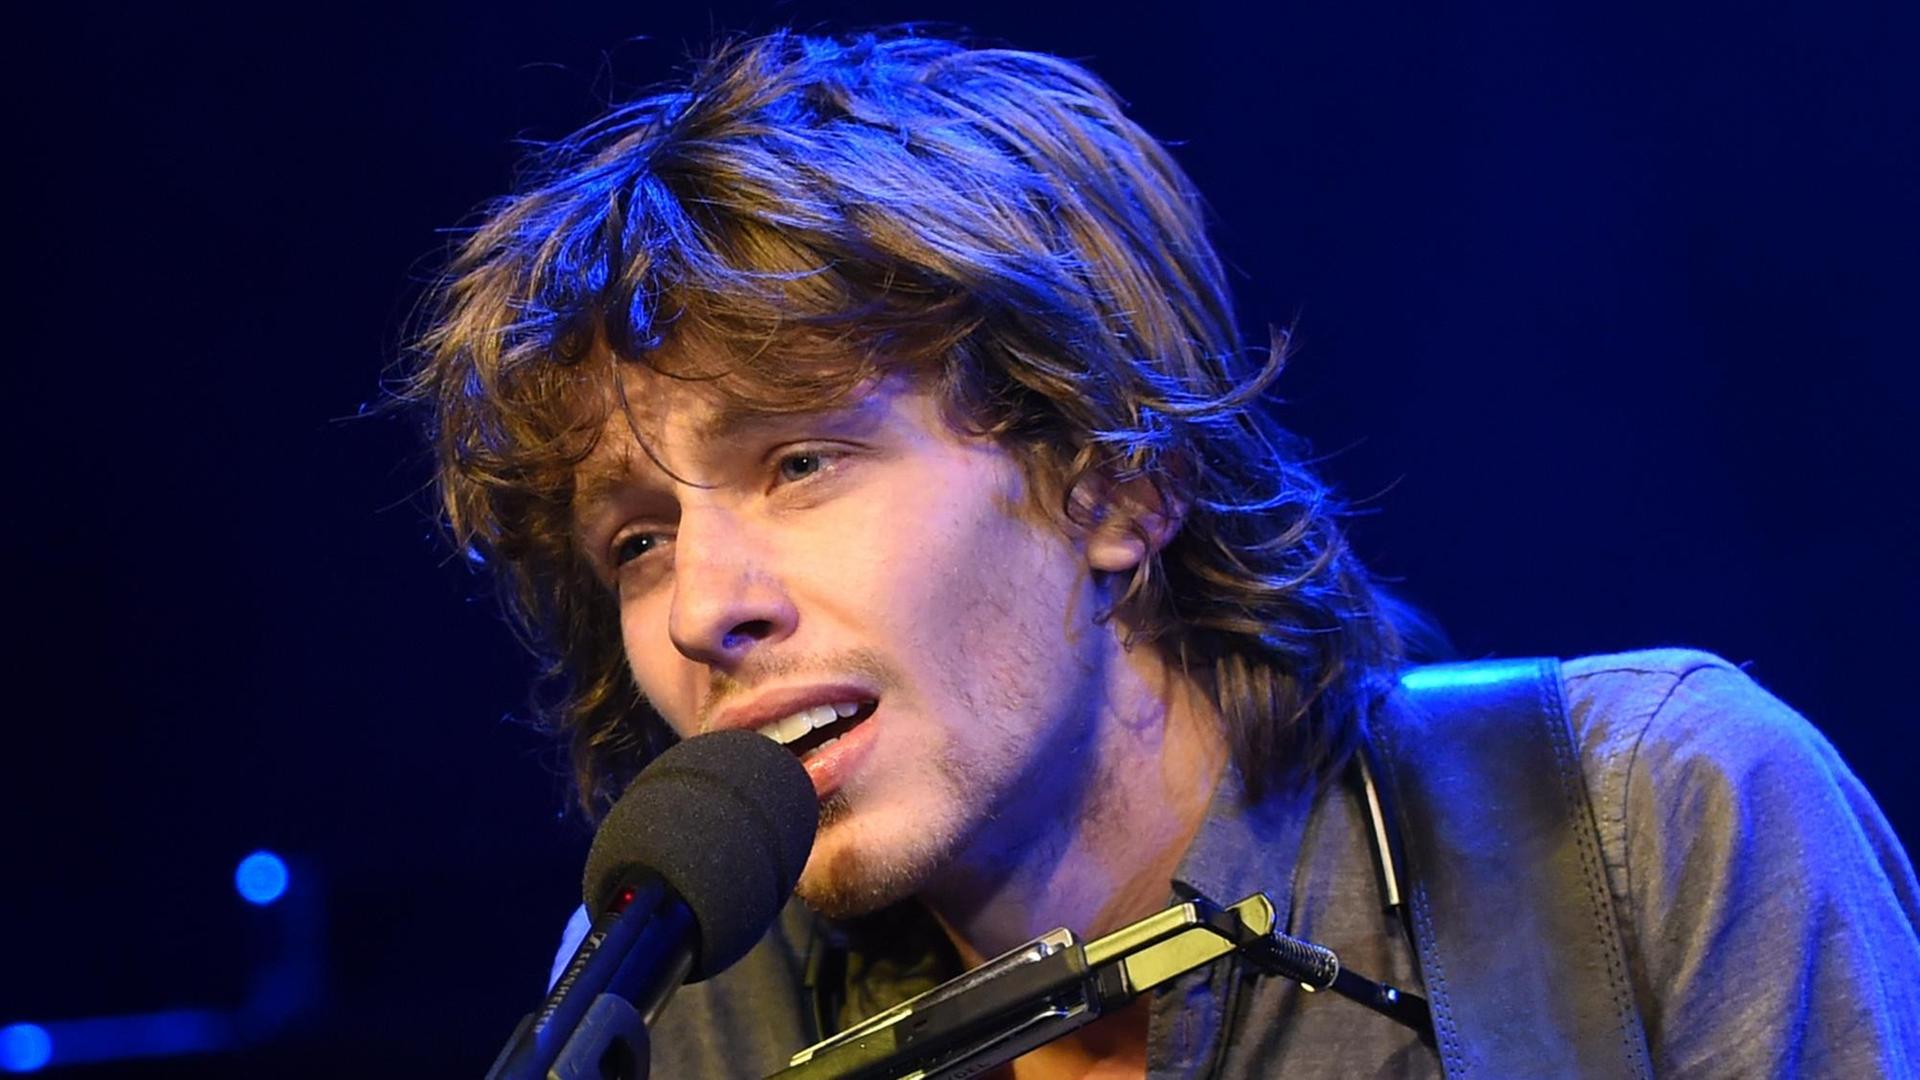 Ein junger Mann mit buschigem Haar singt mit leidenschaftlichem Ausdruck in ein Mikrofon.